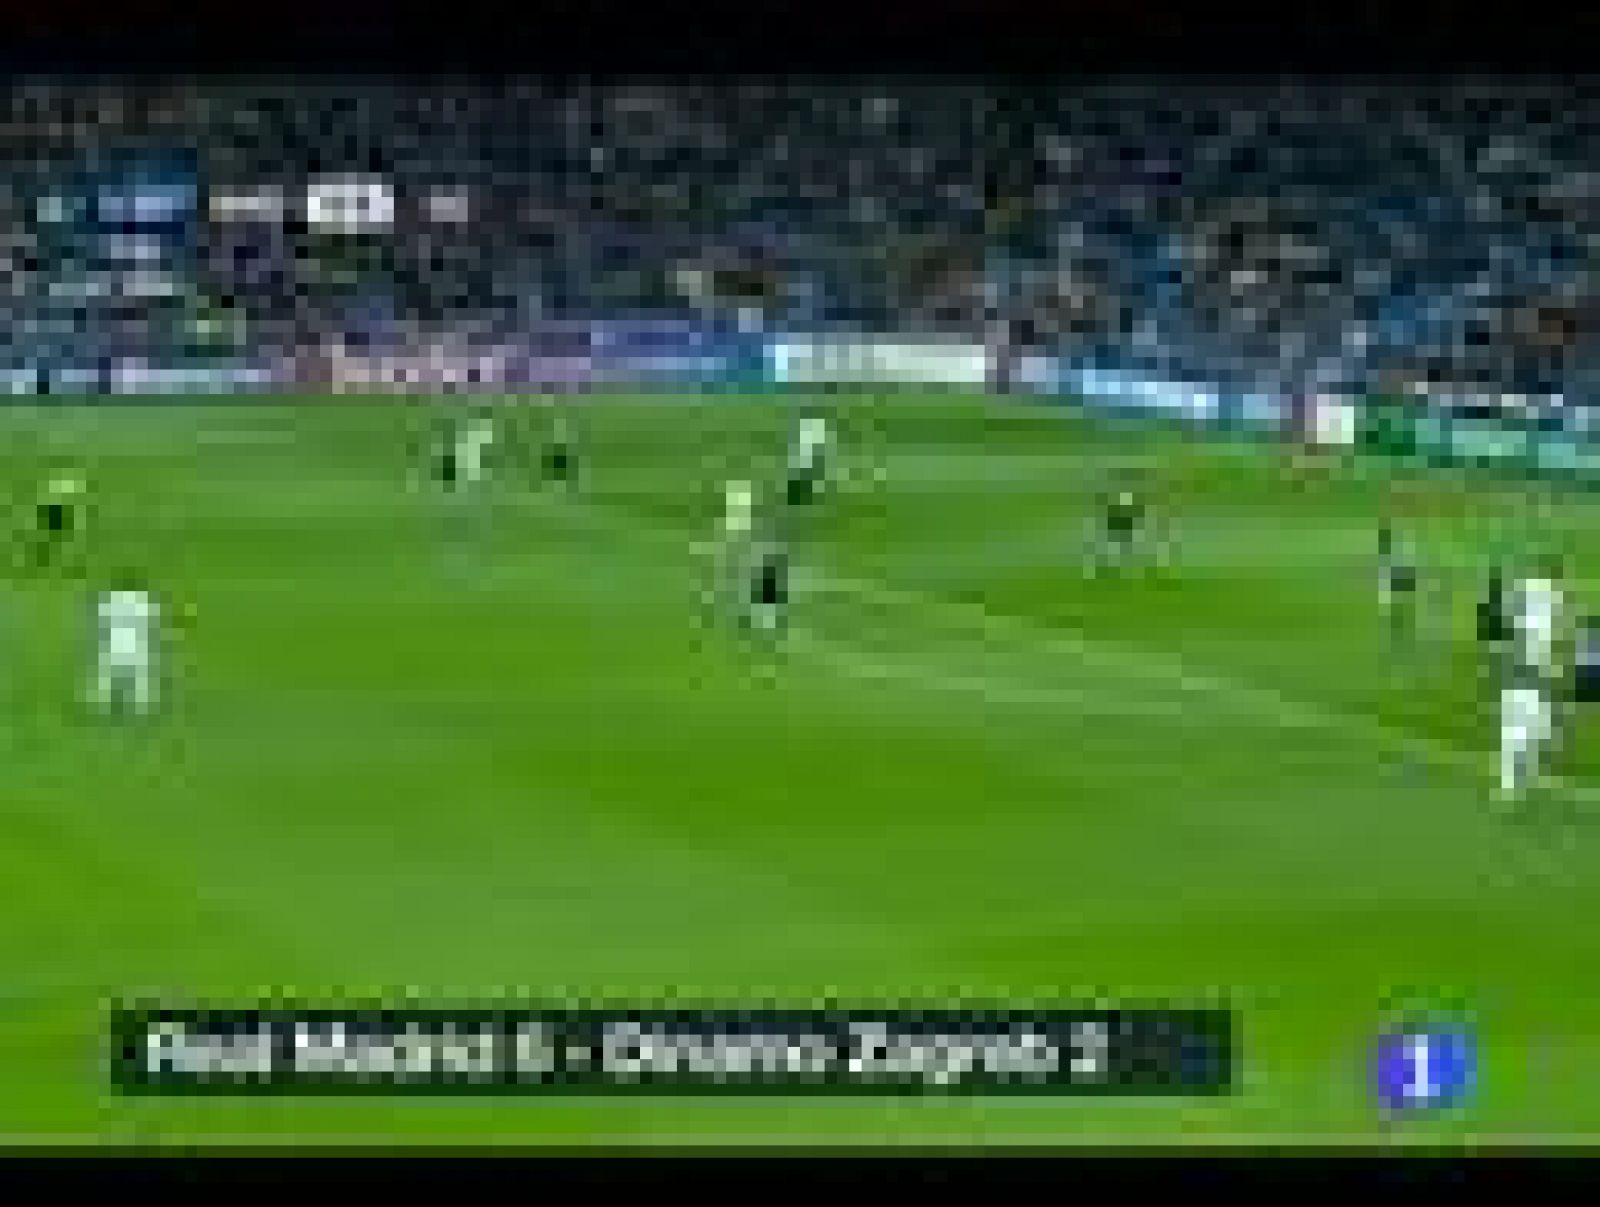 La brillantez de Karim Benzema lanzó a un Real Madrid con rotaciones, sin Cristiano Ronaldo, a una goleada aplastante ante el rival más blando del grupo, 6-2 al Dinamo Zagreb, para certificar la primera plaza de grupo y permitir a José Mourinho estab